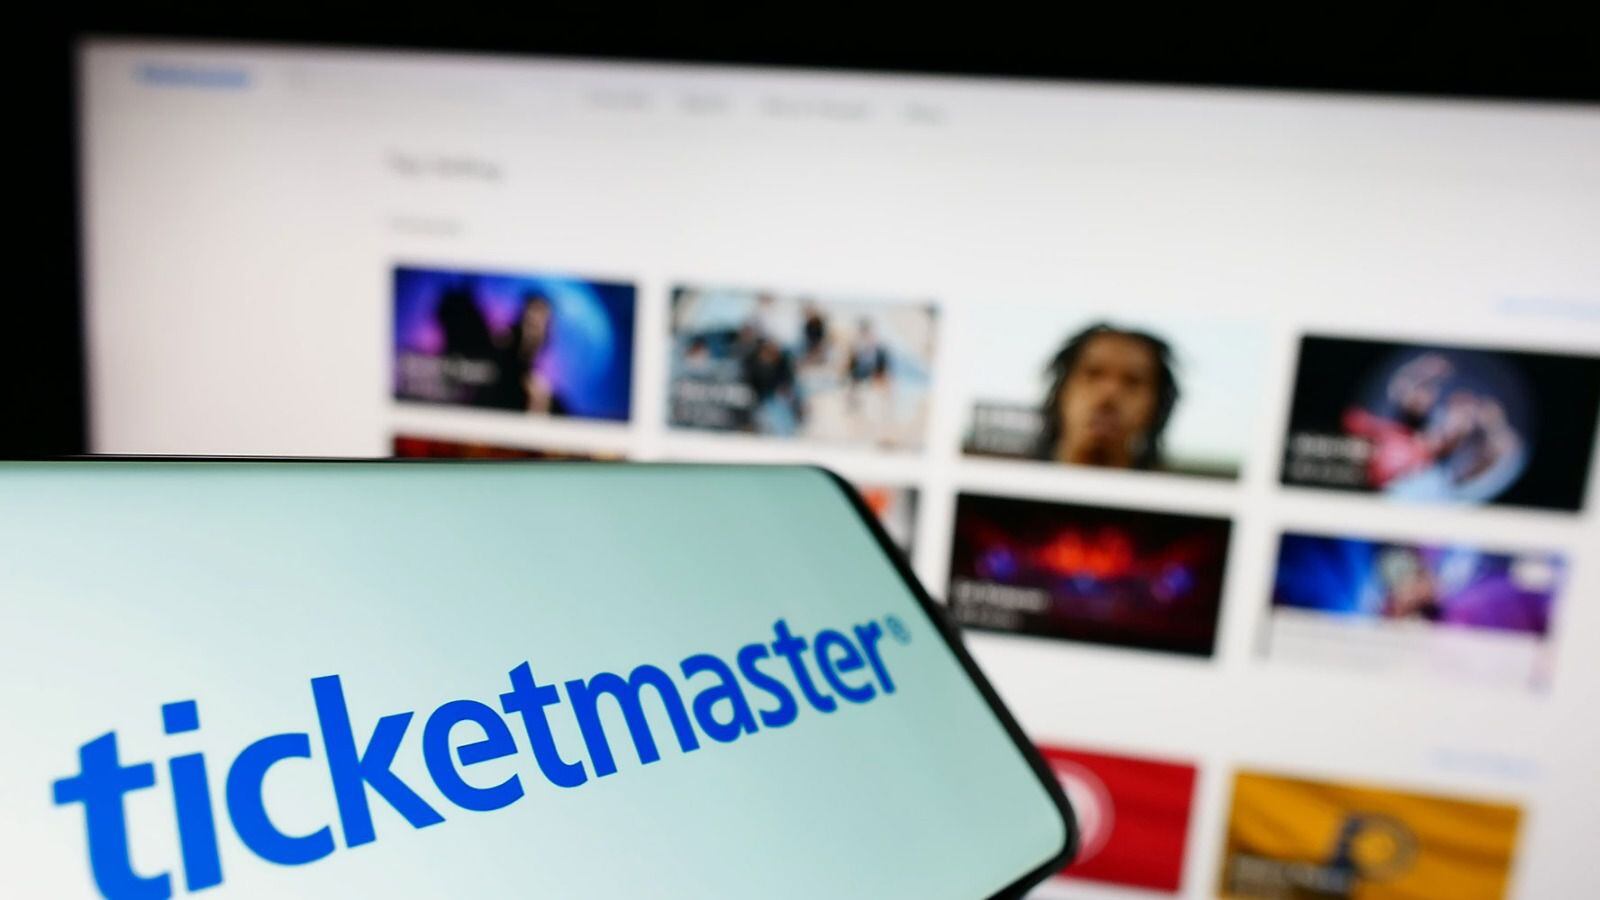 Ticketmaster regresará dinero a usuarios afectados por sus cancelaciones en un periodo de tres años. (Foto: T. Schneider / Shutterstock.com)